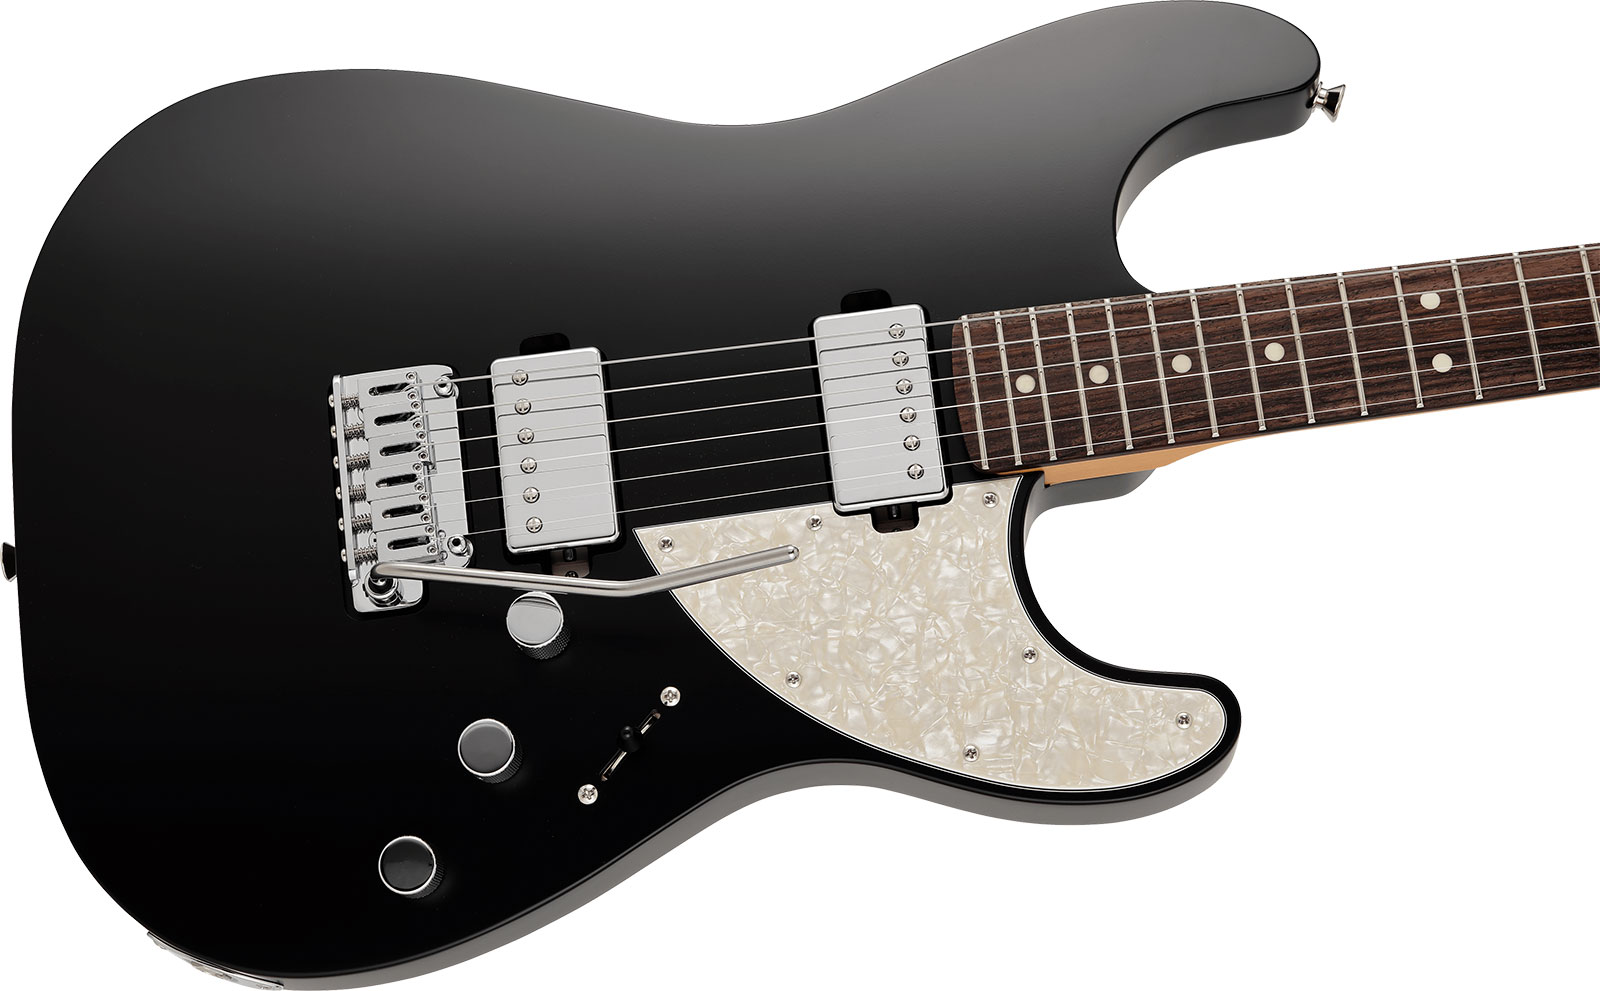 Fender Strat Elemental Mij Jap 2h Trem Rw - Stone Black - Str shape electric guitar - Variation 2